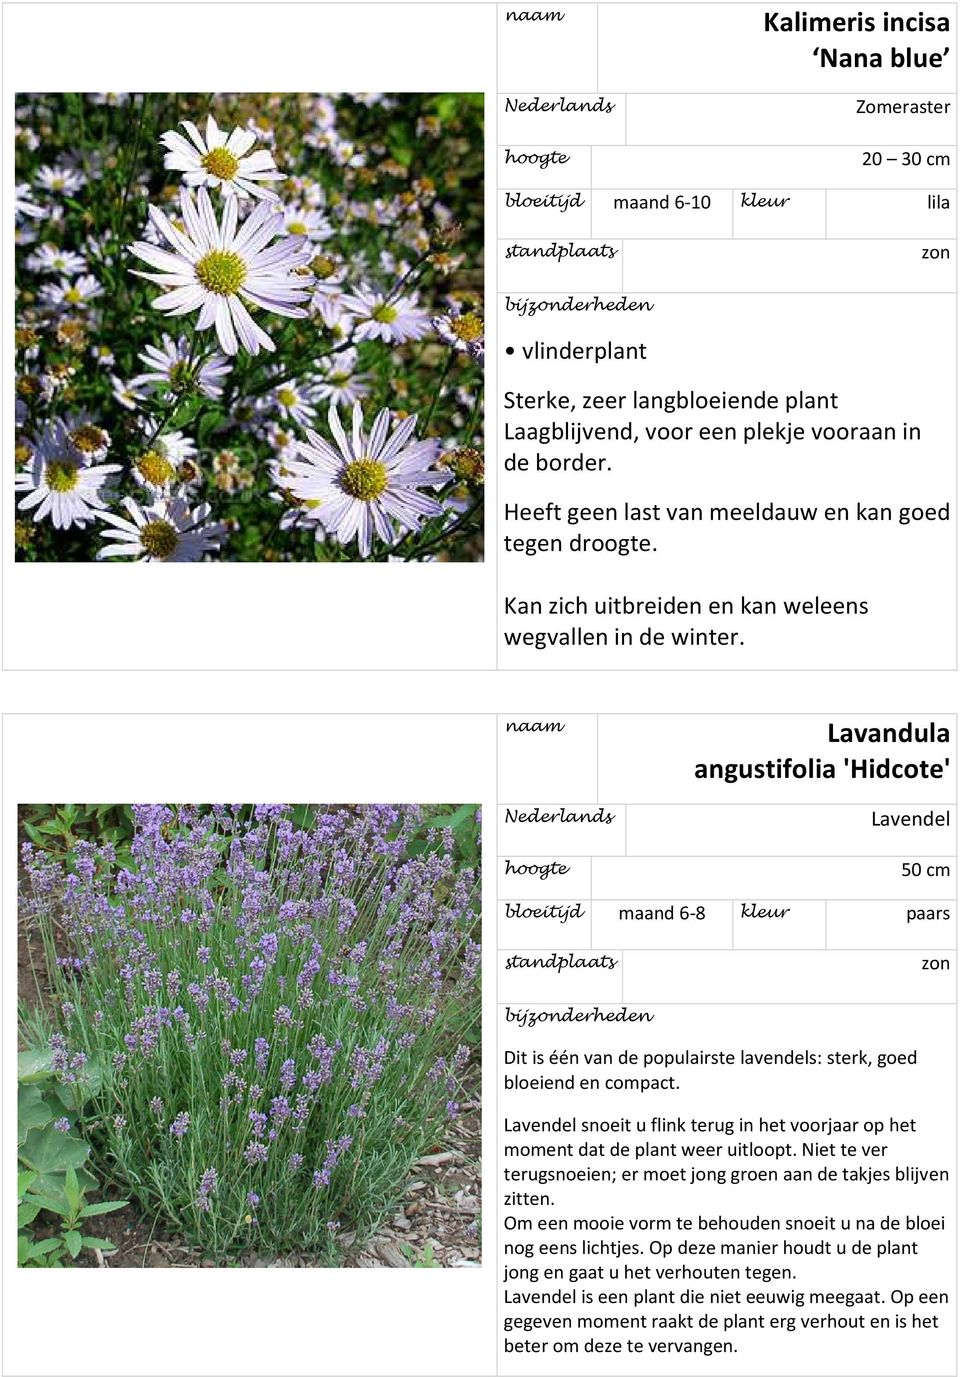 Lavandula angustifolia 'Hidcote' Lavendel 50 cm bloeitijd maand 6-8 kleur paars Dit is één van de populairste lavendels: sterk, goed bloeiend en compact.